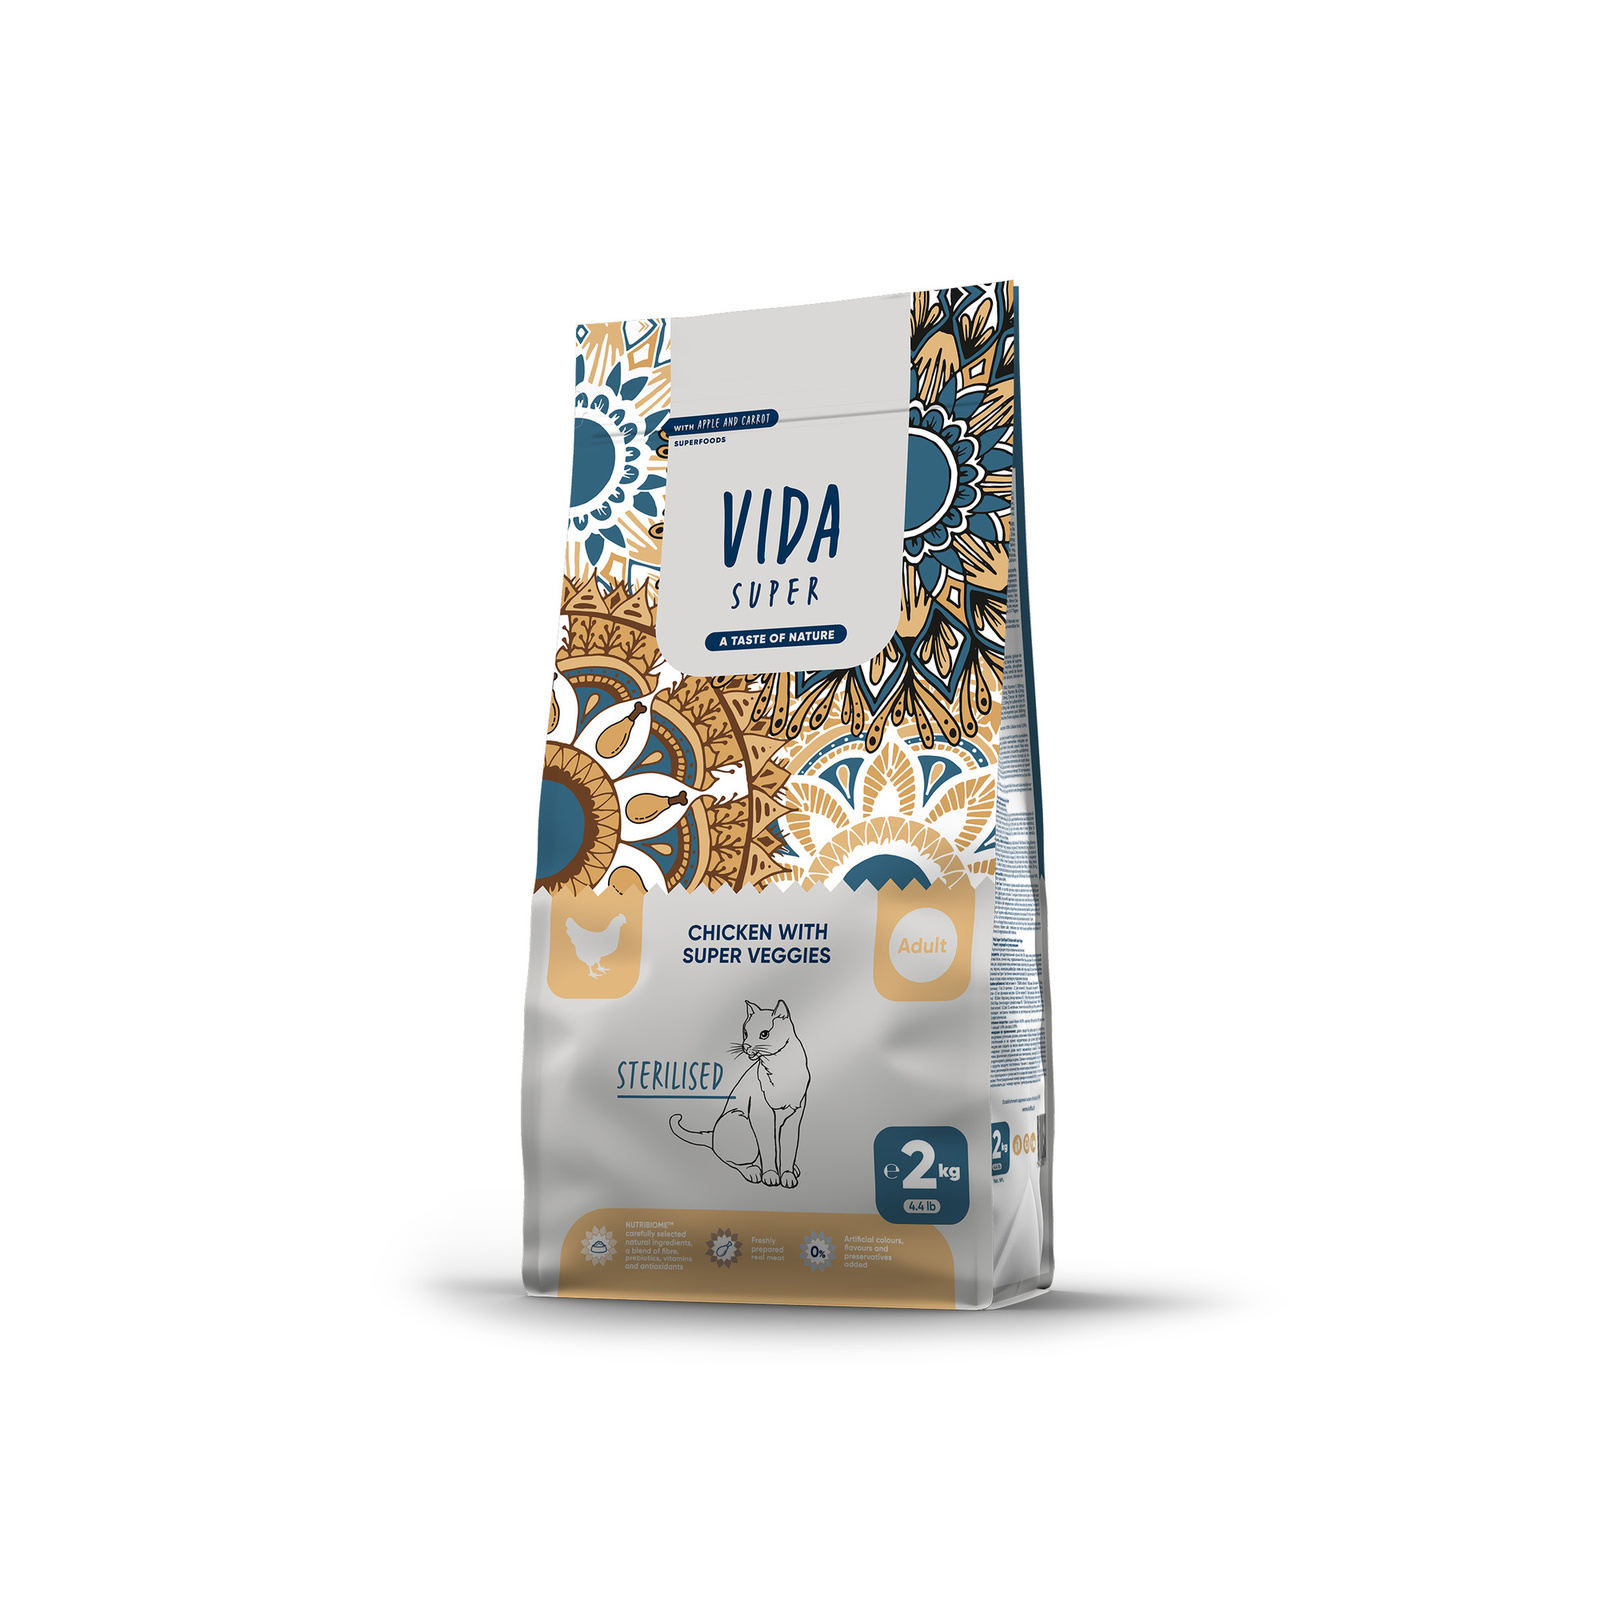 VIDA Super VIDA Super корм для взрослых стерилизованных кошек с курицей и овощами (10 кг)